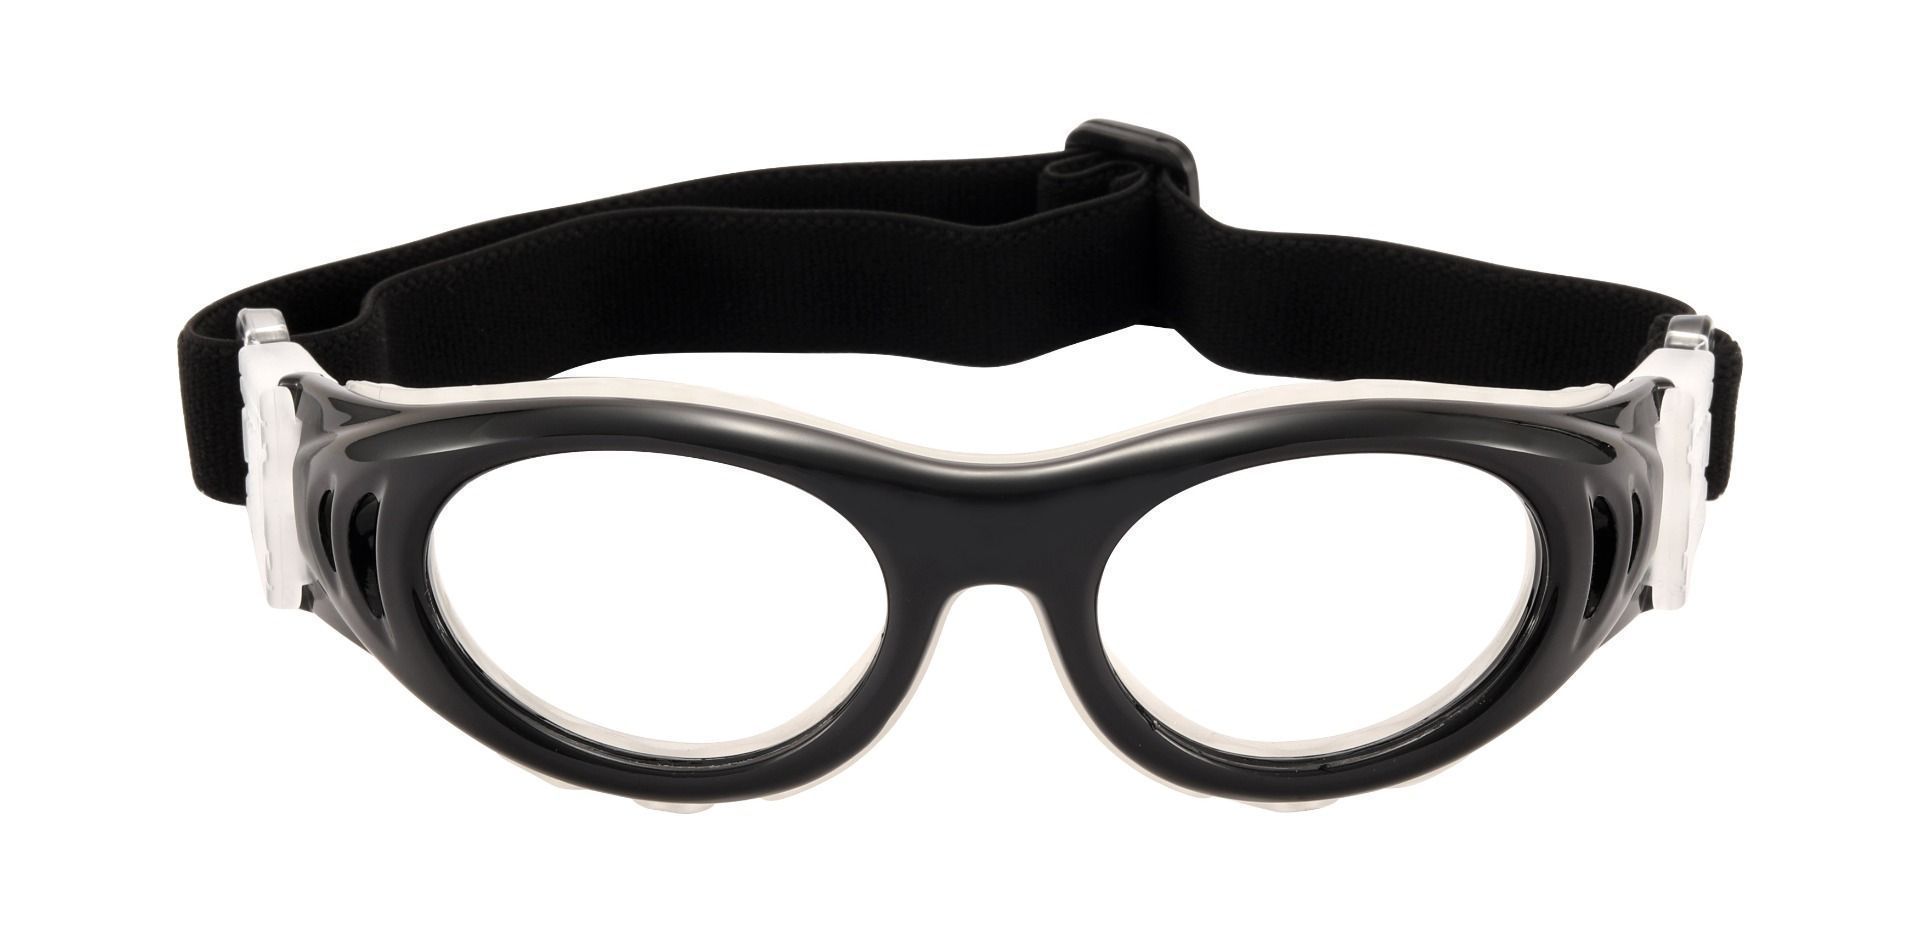 Decker Sports Goggles Prescription Glasses - Black